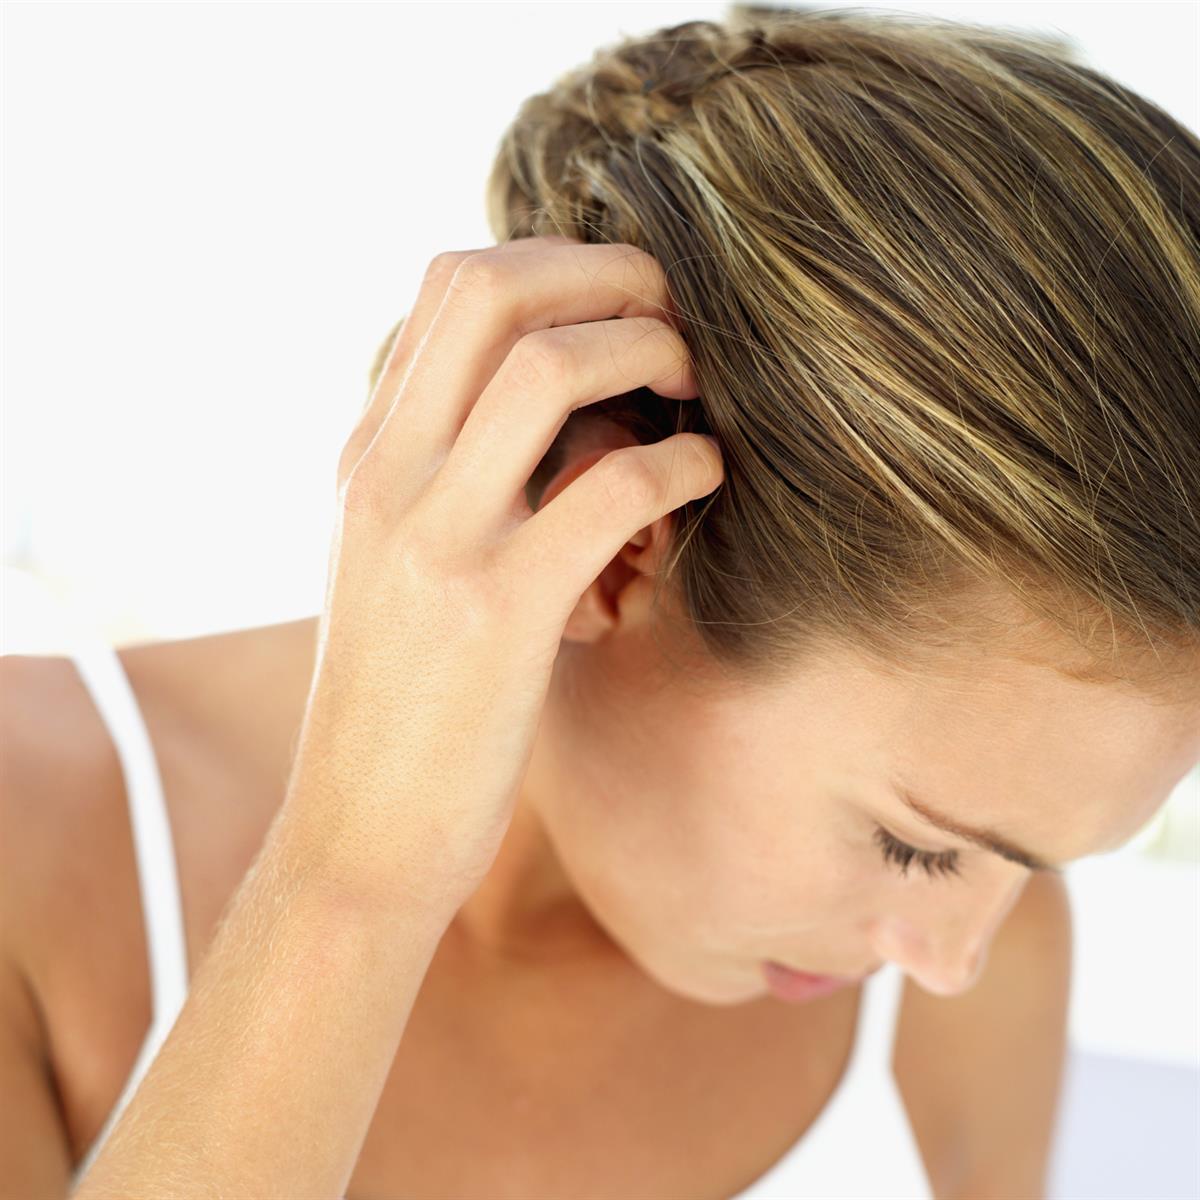 Jucken, Rötungen, schnelles Nachfetten oder Schuppen – sebamed bietet sanfte Lösungen für Kopfhautprobleme.